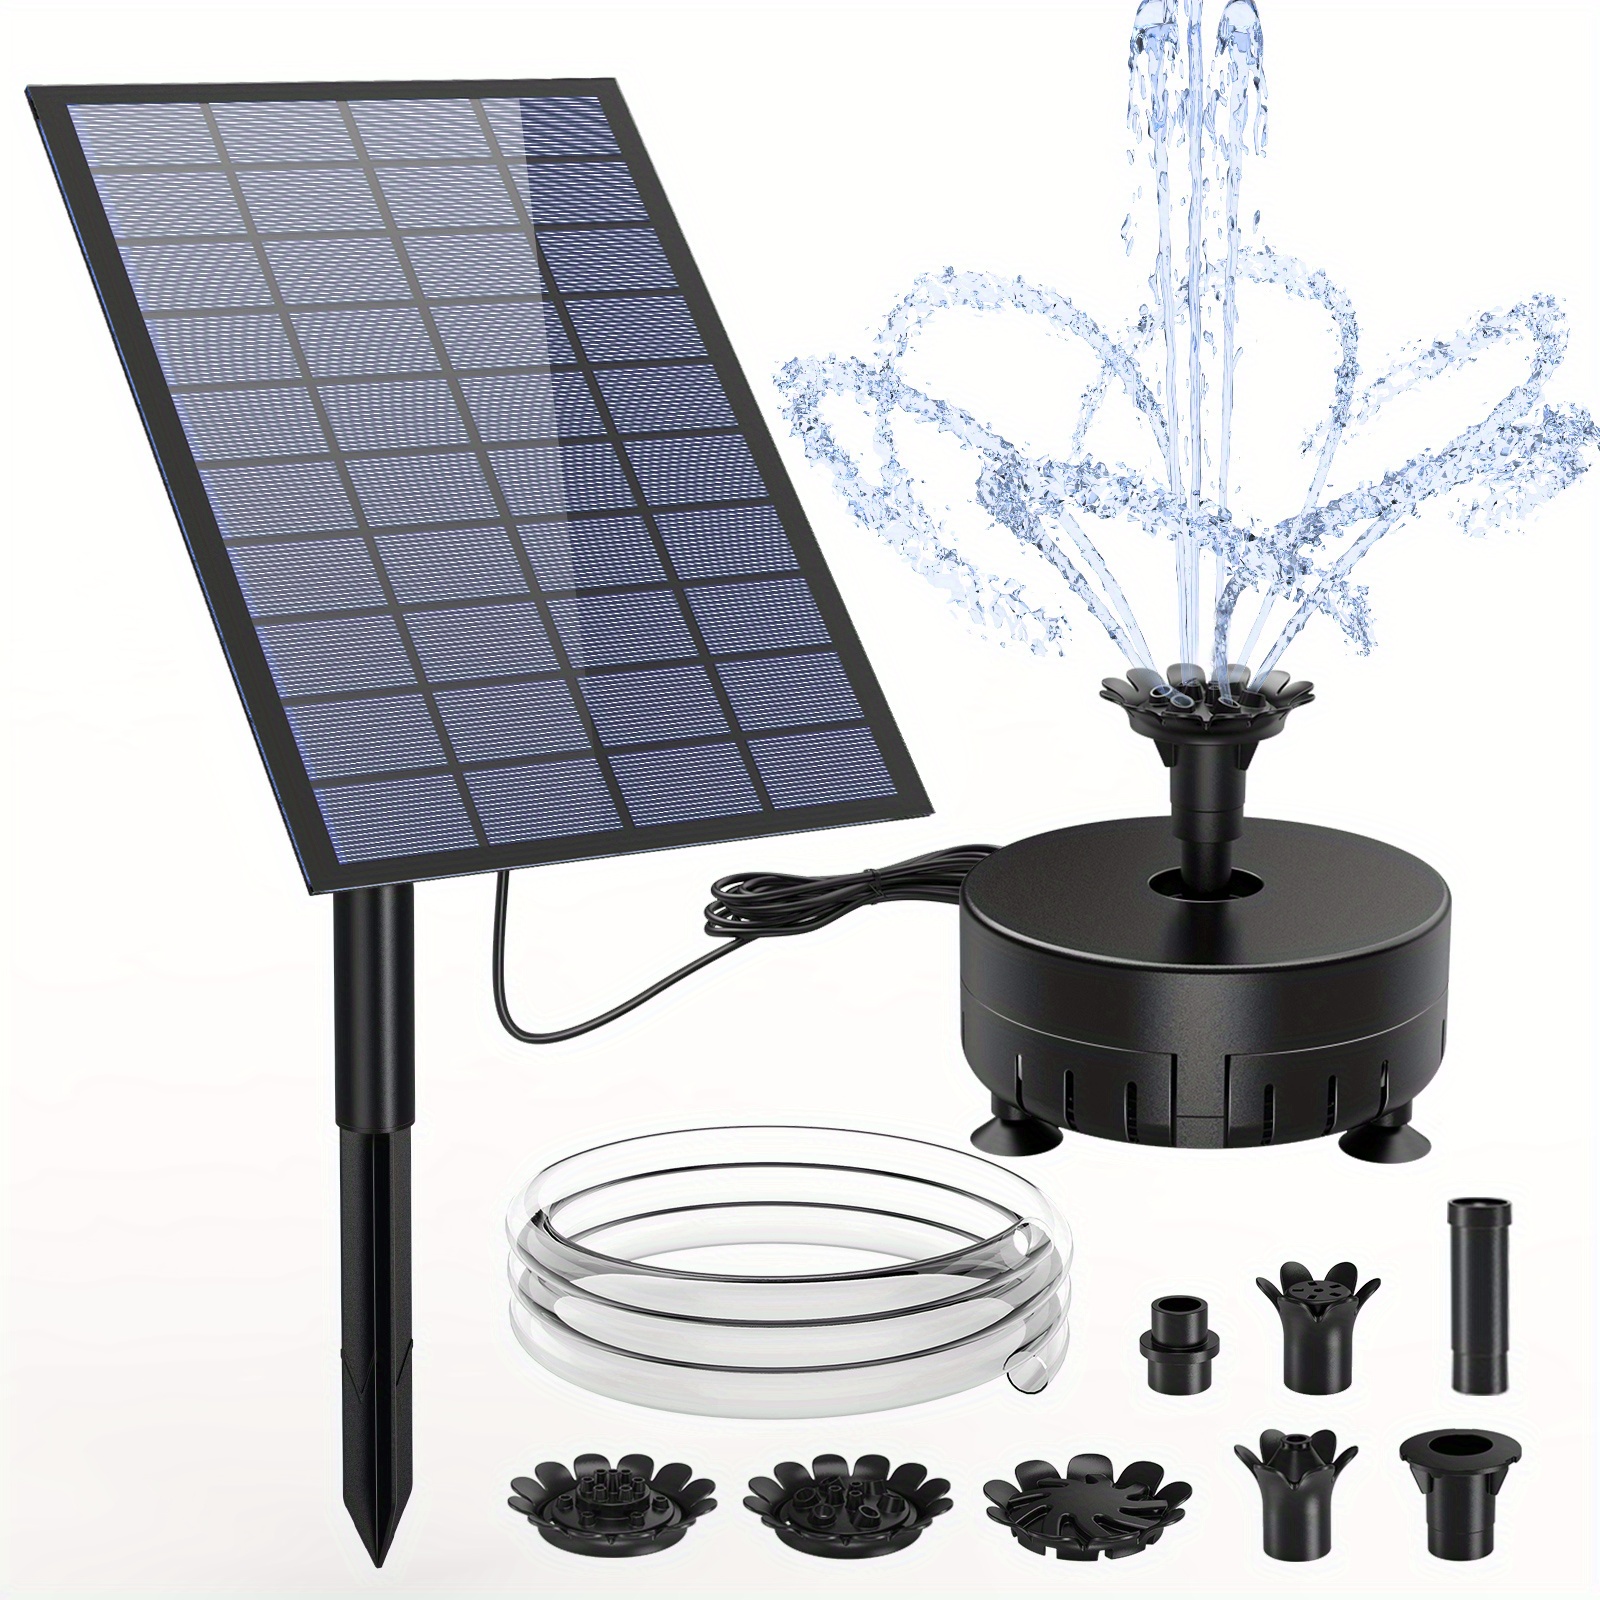 Bomba de fuente solar de 5W 5V con 9 boquillas Kit de bombas de agua solares  para jardín